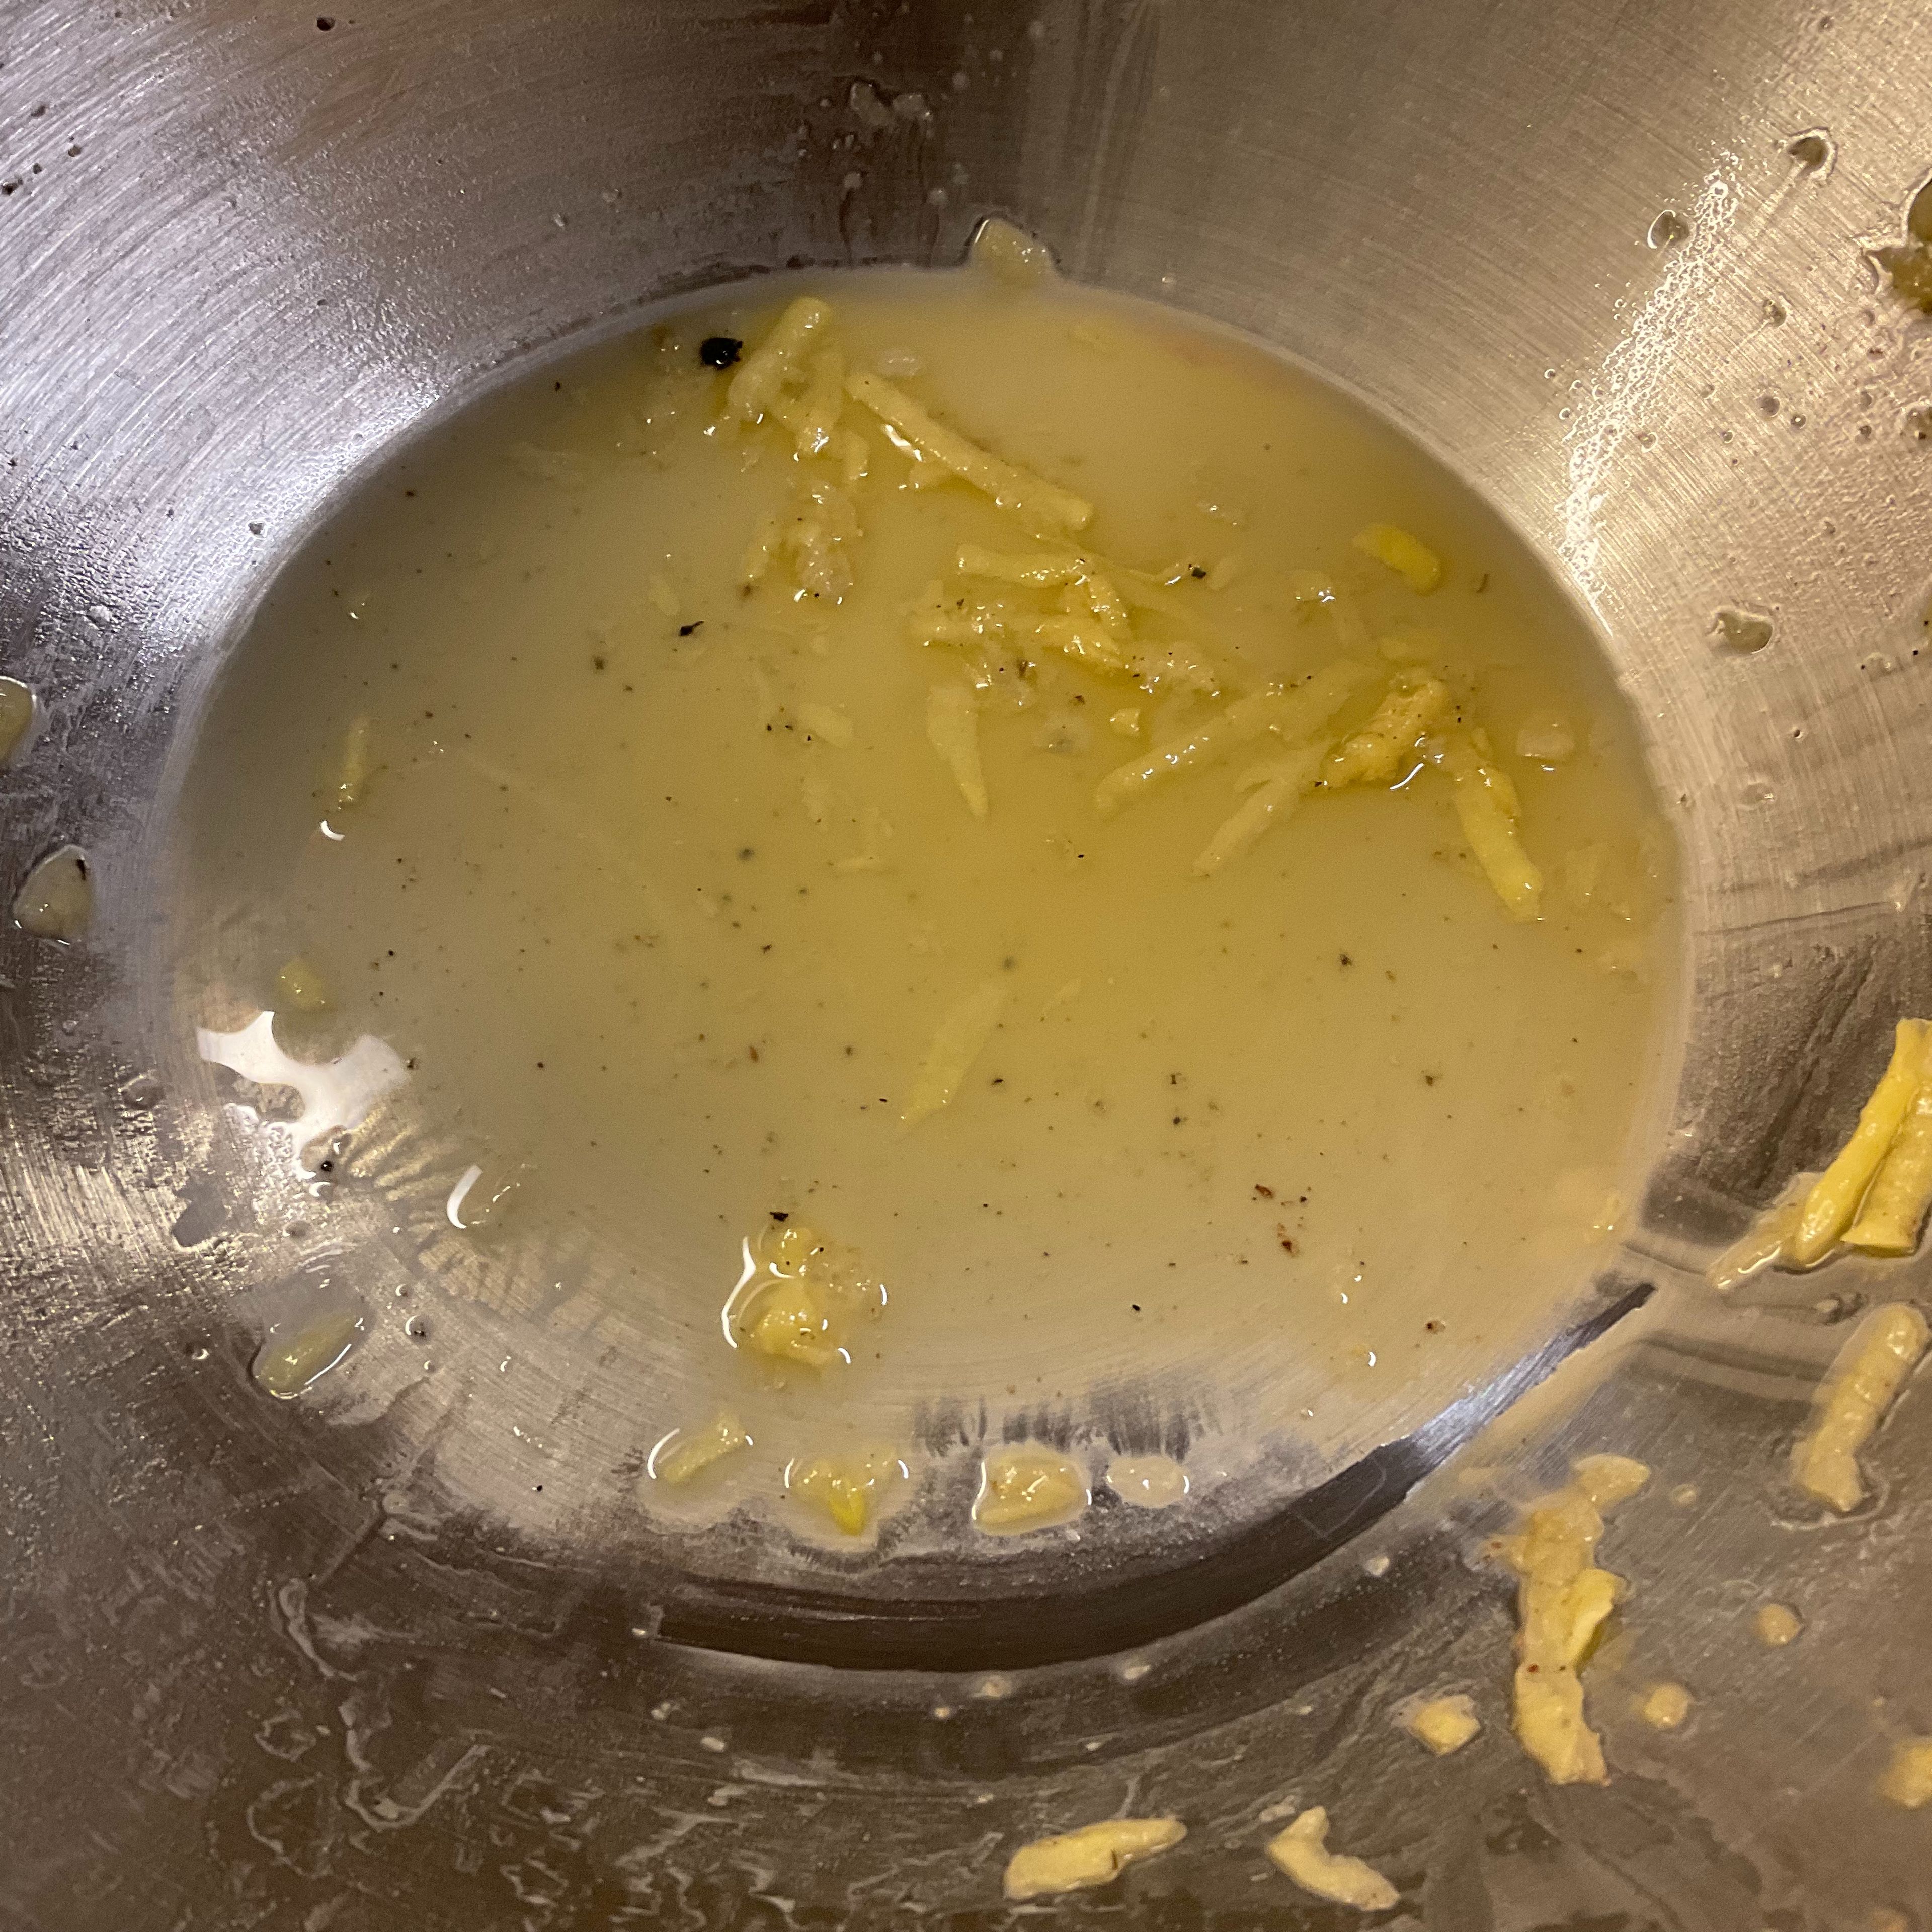 Auch wenn die Kartoffeln gut ausgedrückt wurden, die geriebenen und gewürzten Kartoffeln wässern trotzdem weiter. Wenns zuviel wird kann man die Flüssigkeit vorsichtig abgießen, aber Vorsicht a bisserl was immer drin lassen, denn Ihr beseitigt damit auch die Stärke, die mit dem Ei den Reiberdatschi zusammenhält. Also die Hälfte ruhig abschütten, den Rest aber immer wieder einrühren.